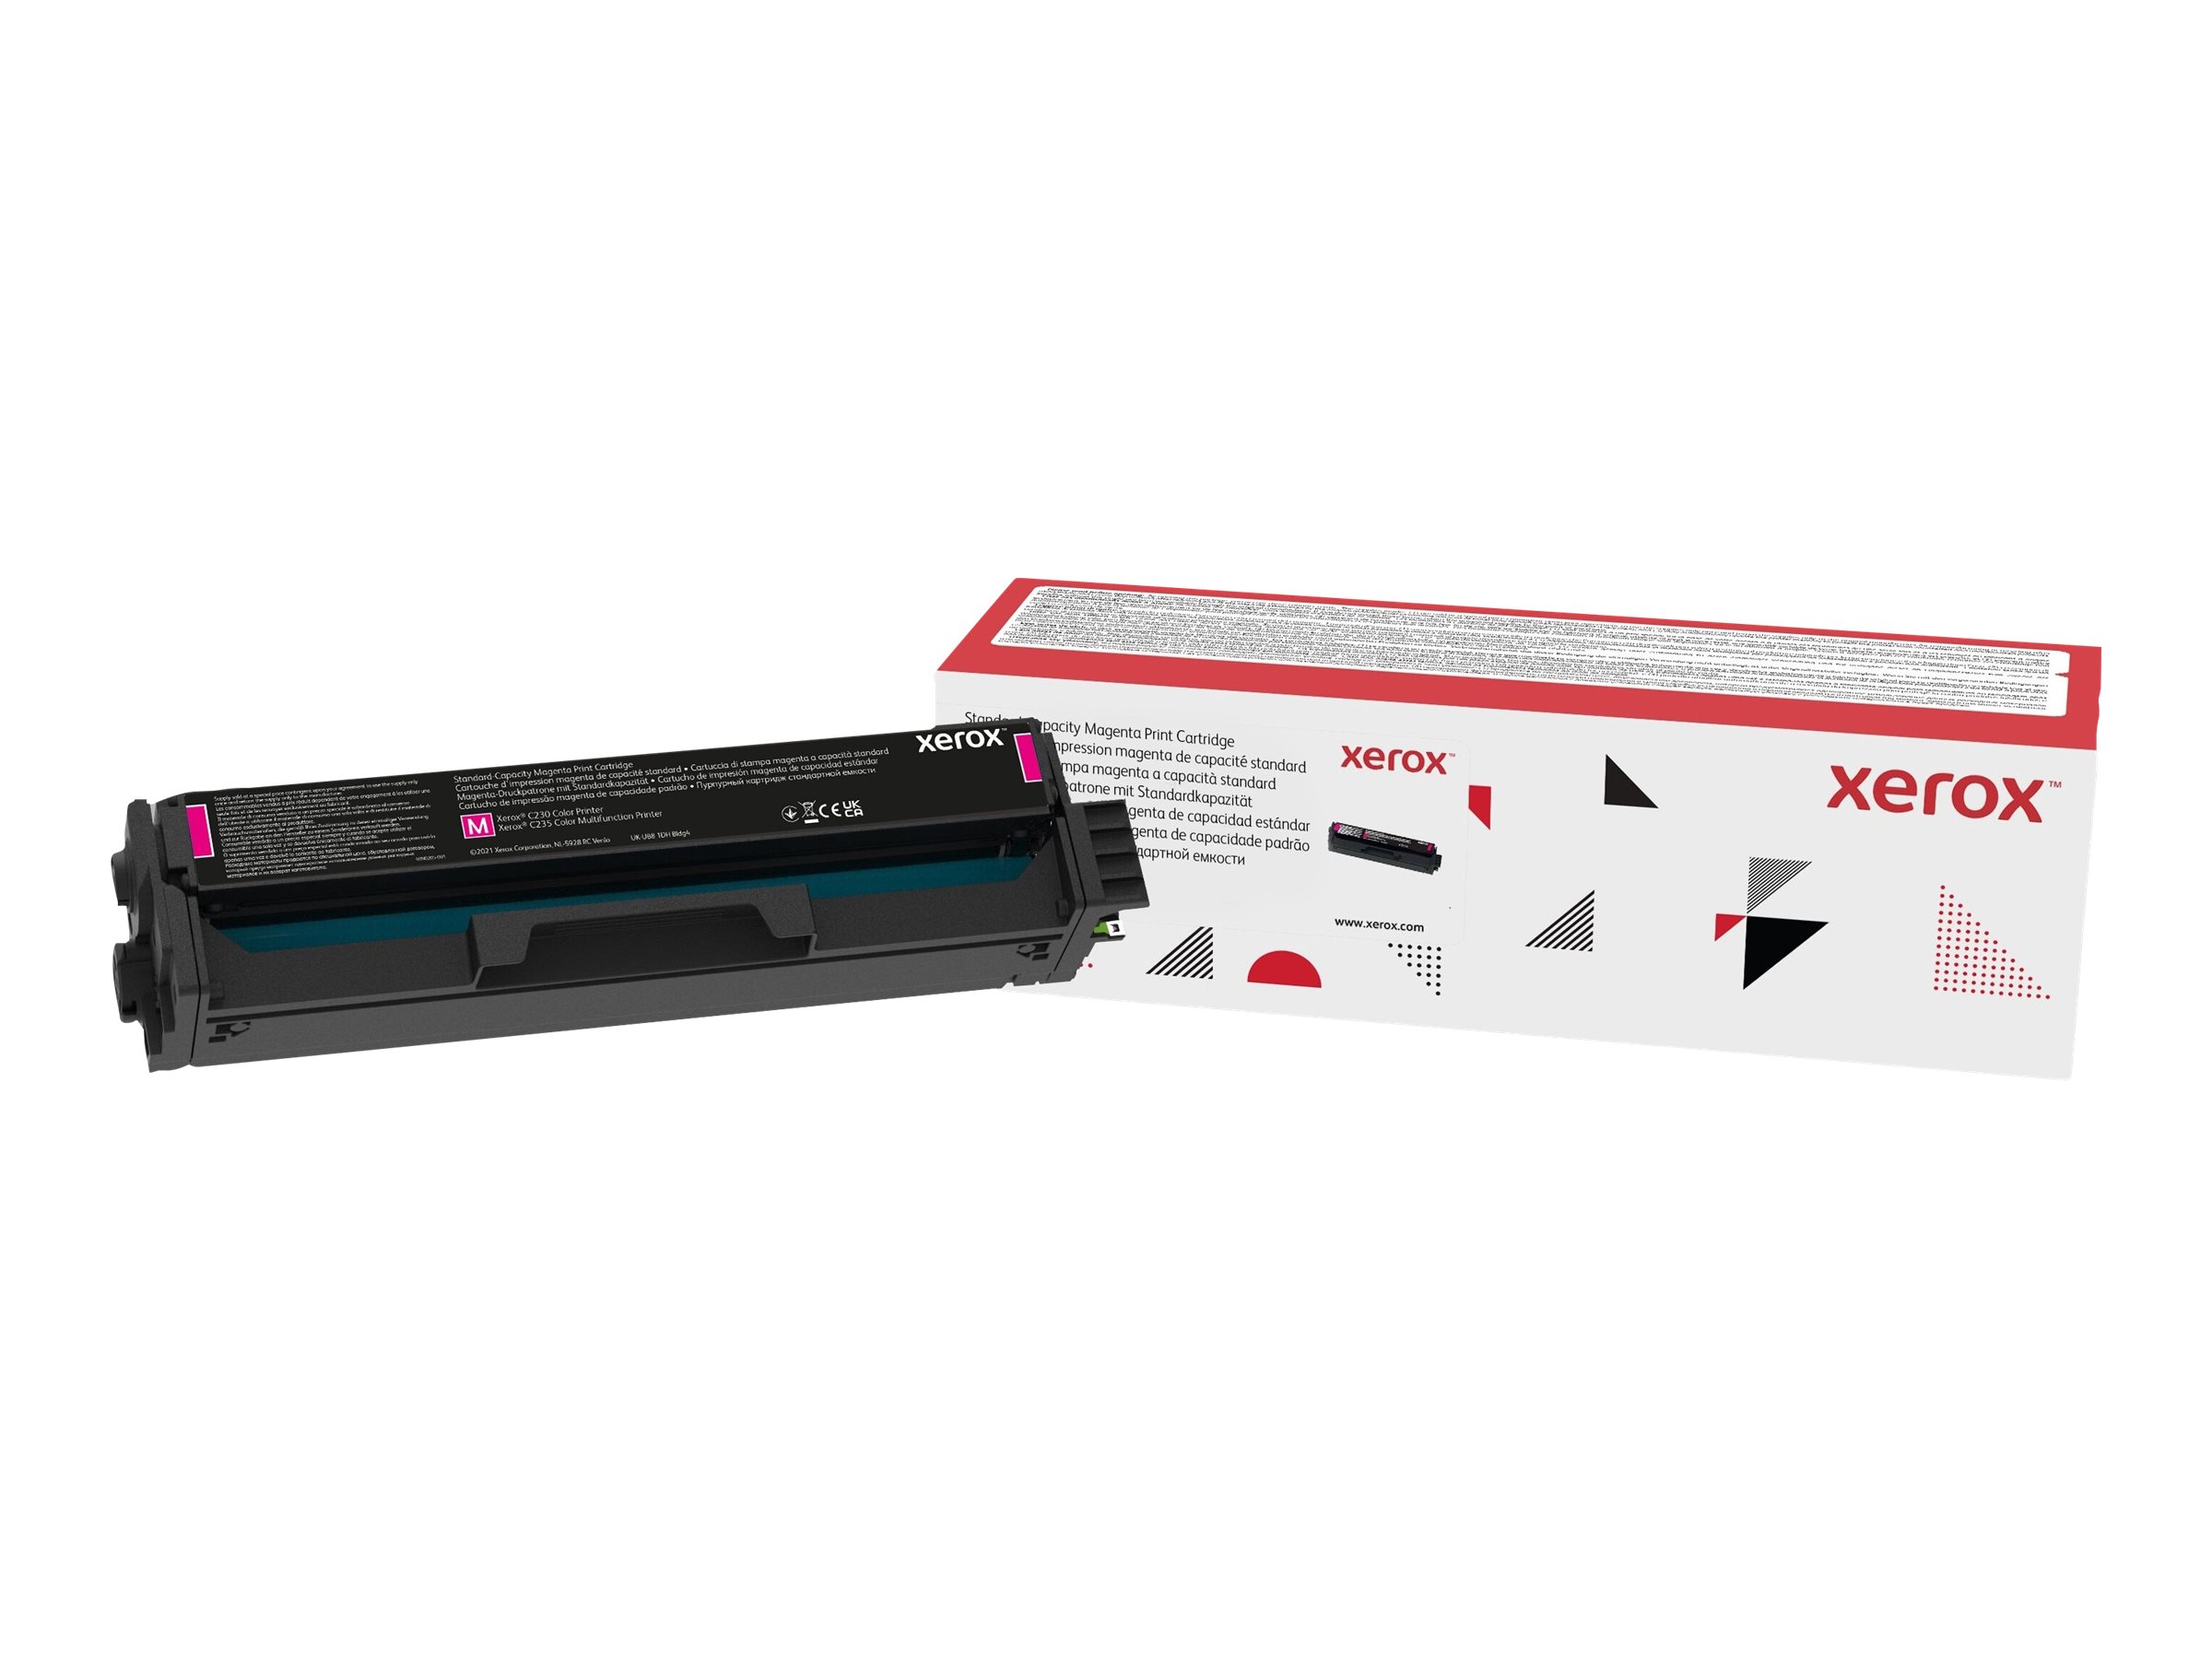 Xerox - Magenta - original - cartouche de toner - pour Xerox C230, C230/DNI, C230V_DNIUK, C235, C235/DNI, C235V_DNIUK - 006R04385 - Autres cartouches de toner